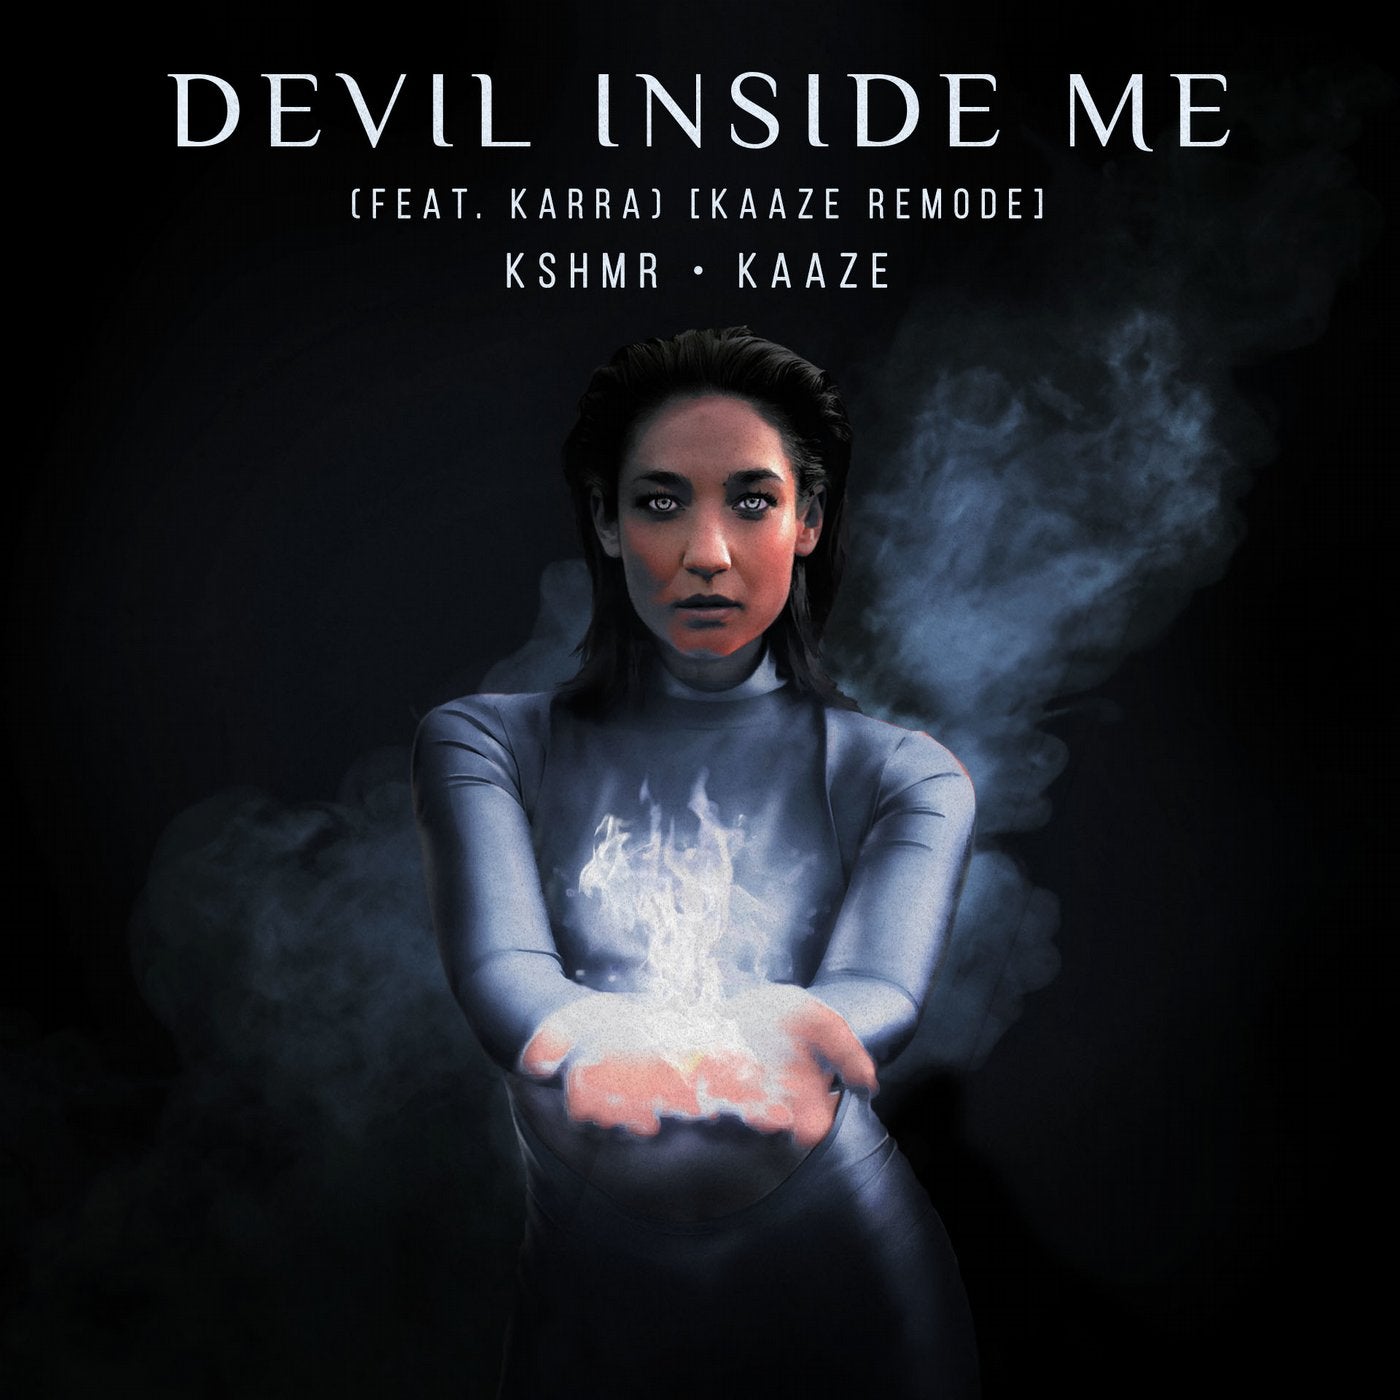 Devil Inside Me (feat. KARRA)